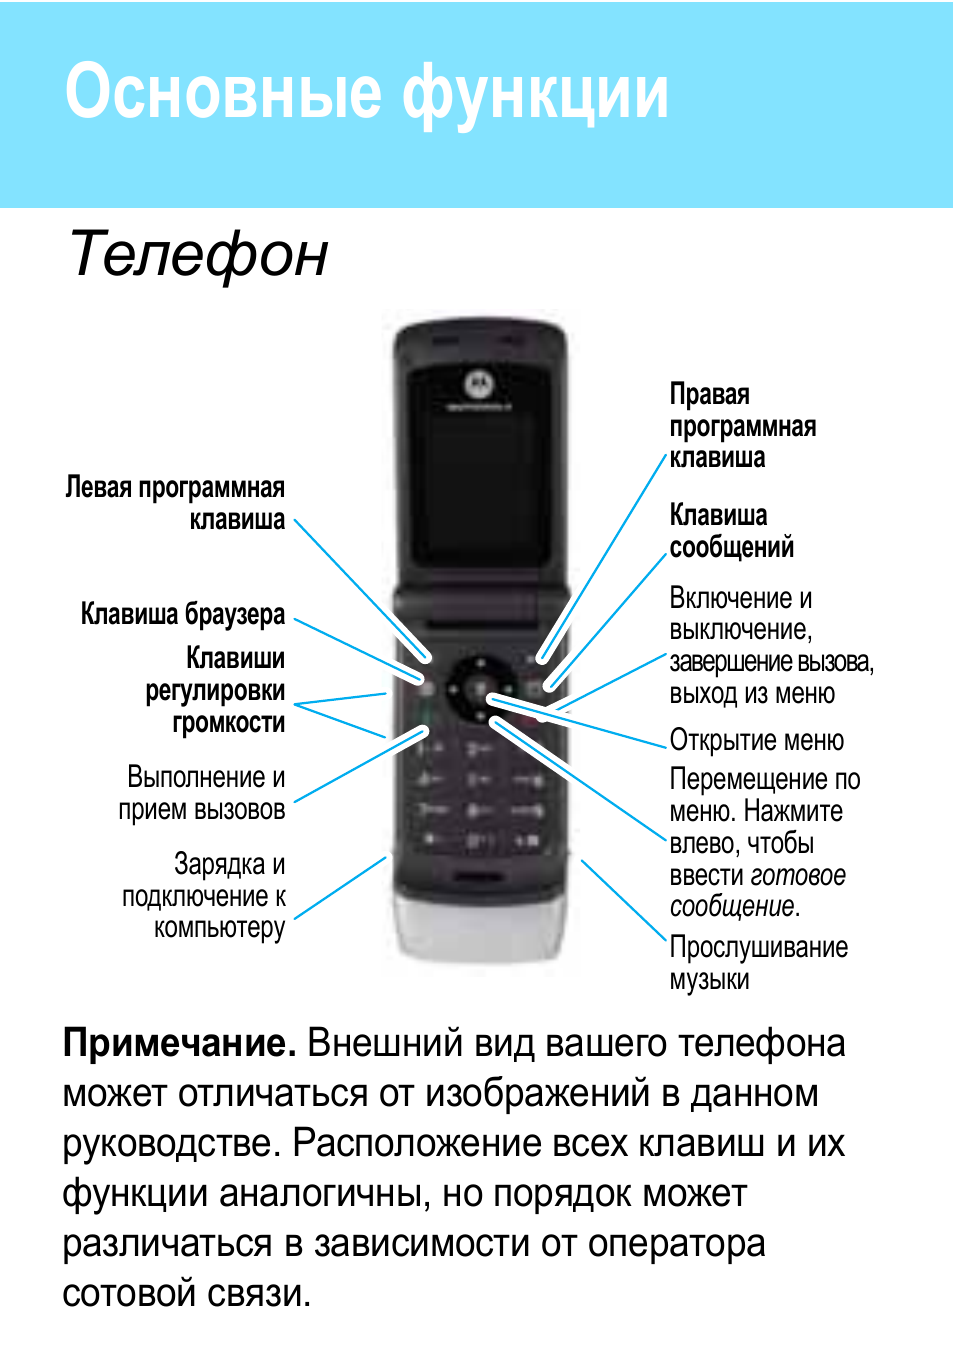 5 функций телефона. Motorola w377. Основные функции телефона. Возможности телефона. Функционал телефона.